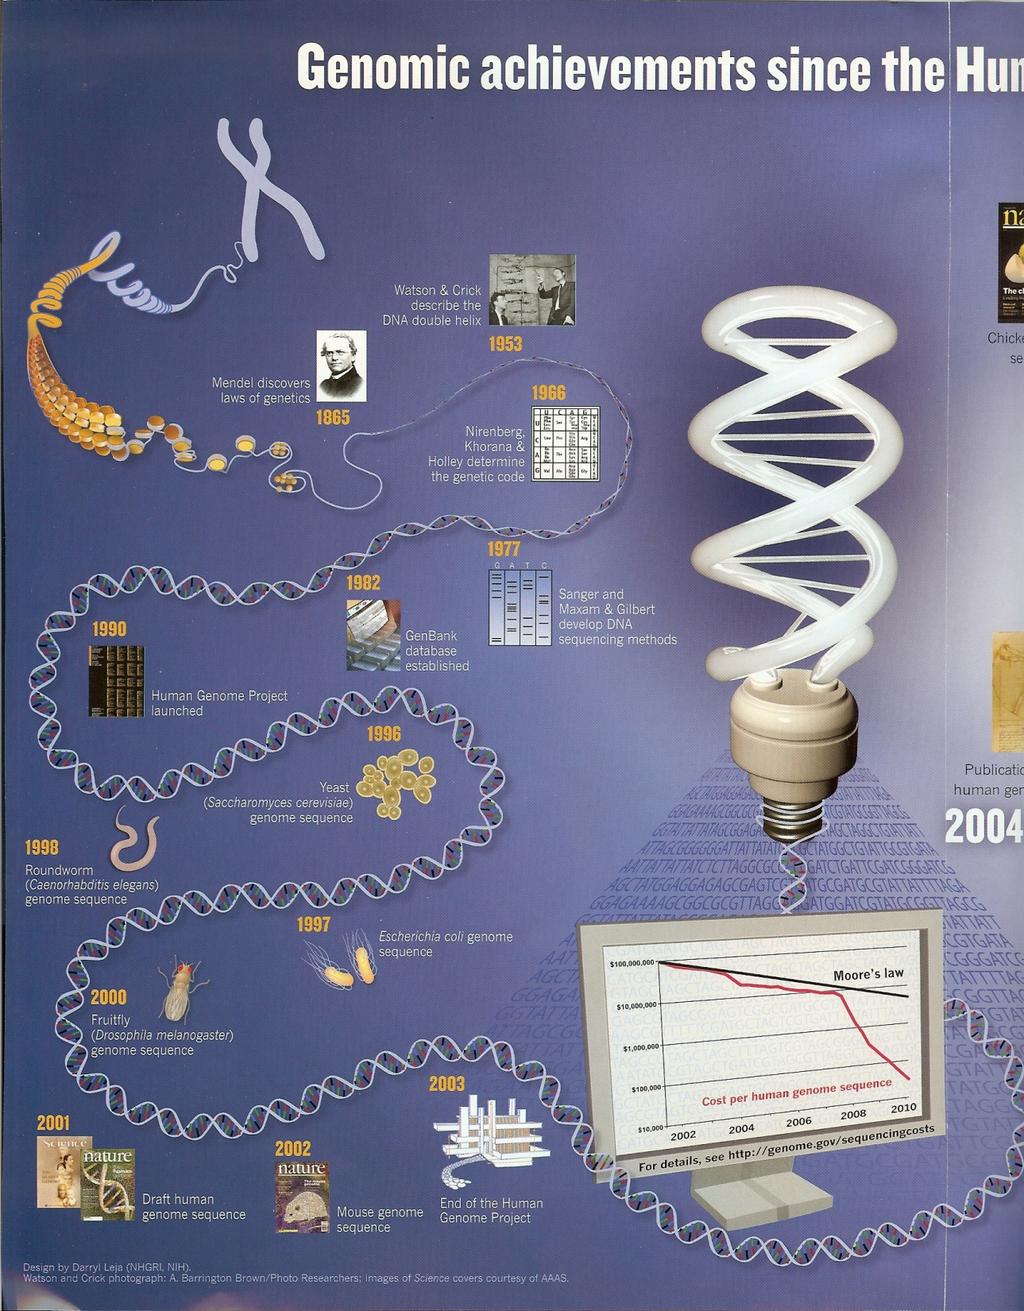 인간유전체사업 결정 이후 유전체 연구분야는 획기적인 발전을 함. 이후 이루어진 업적들.